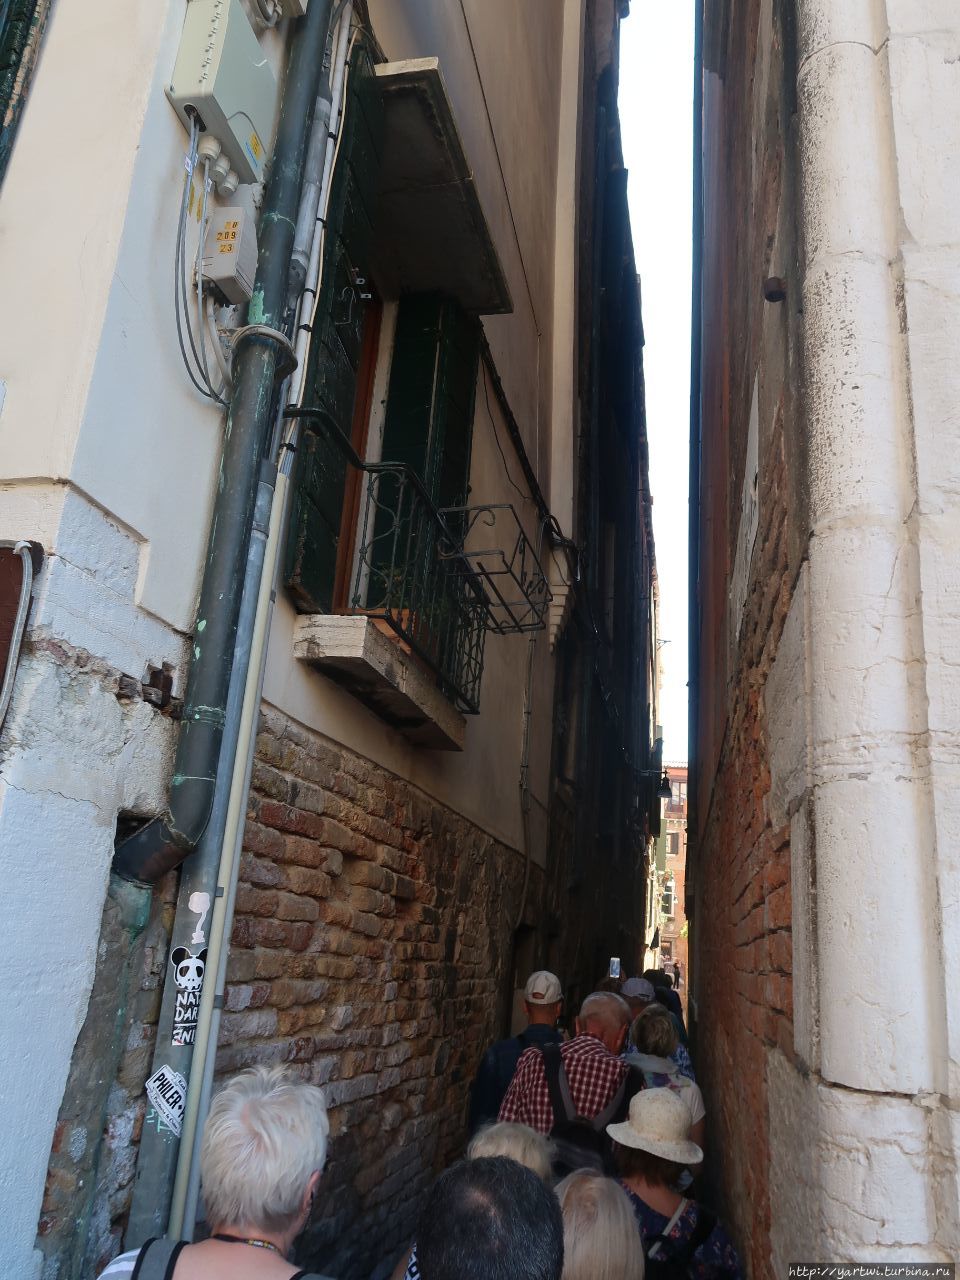 Проходы между зданиями бывают очень узкими и разойтись со встречными пешеходами очень сложно. Венеция, Италия